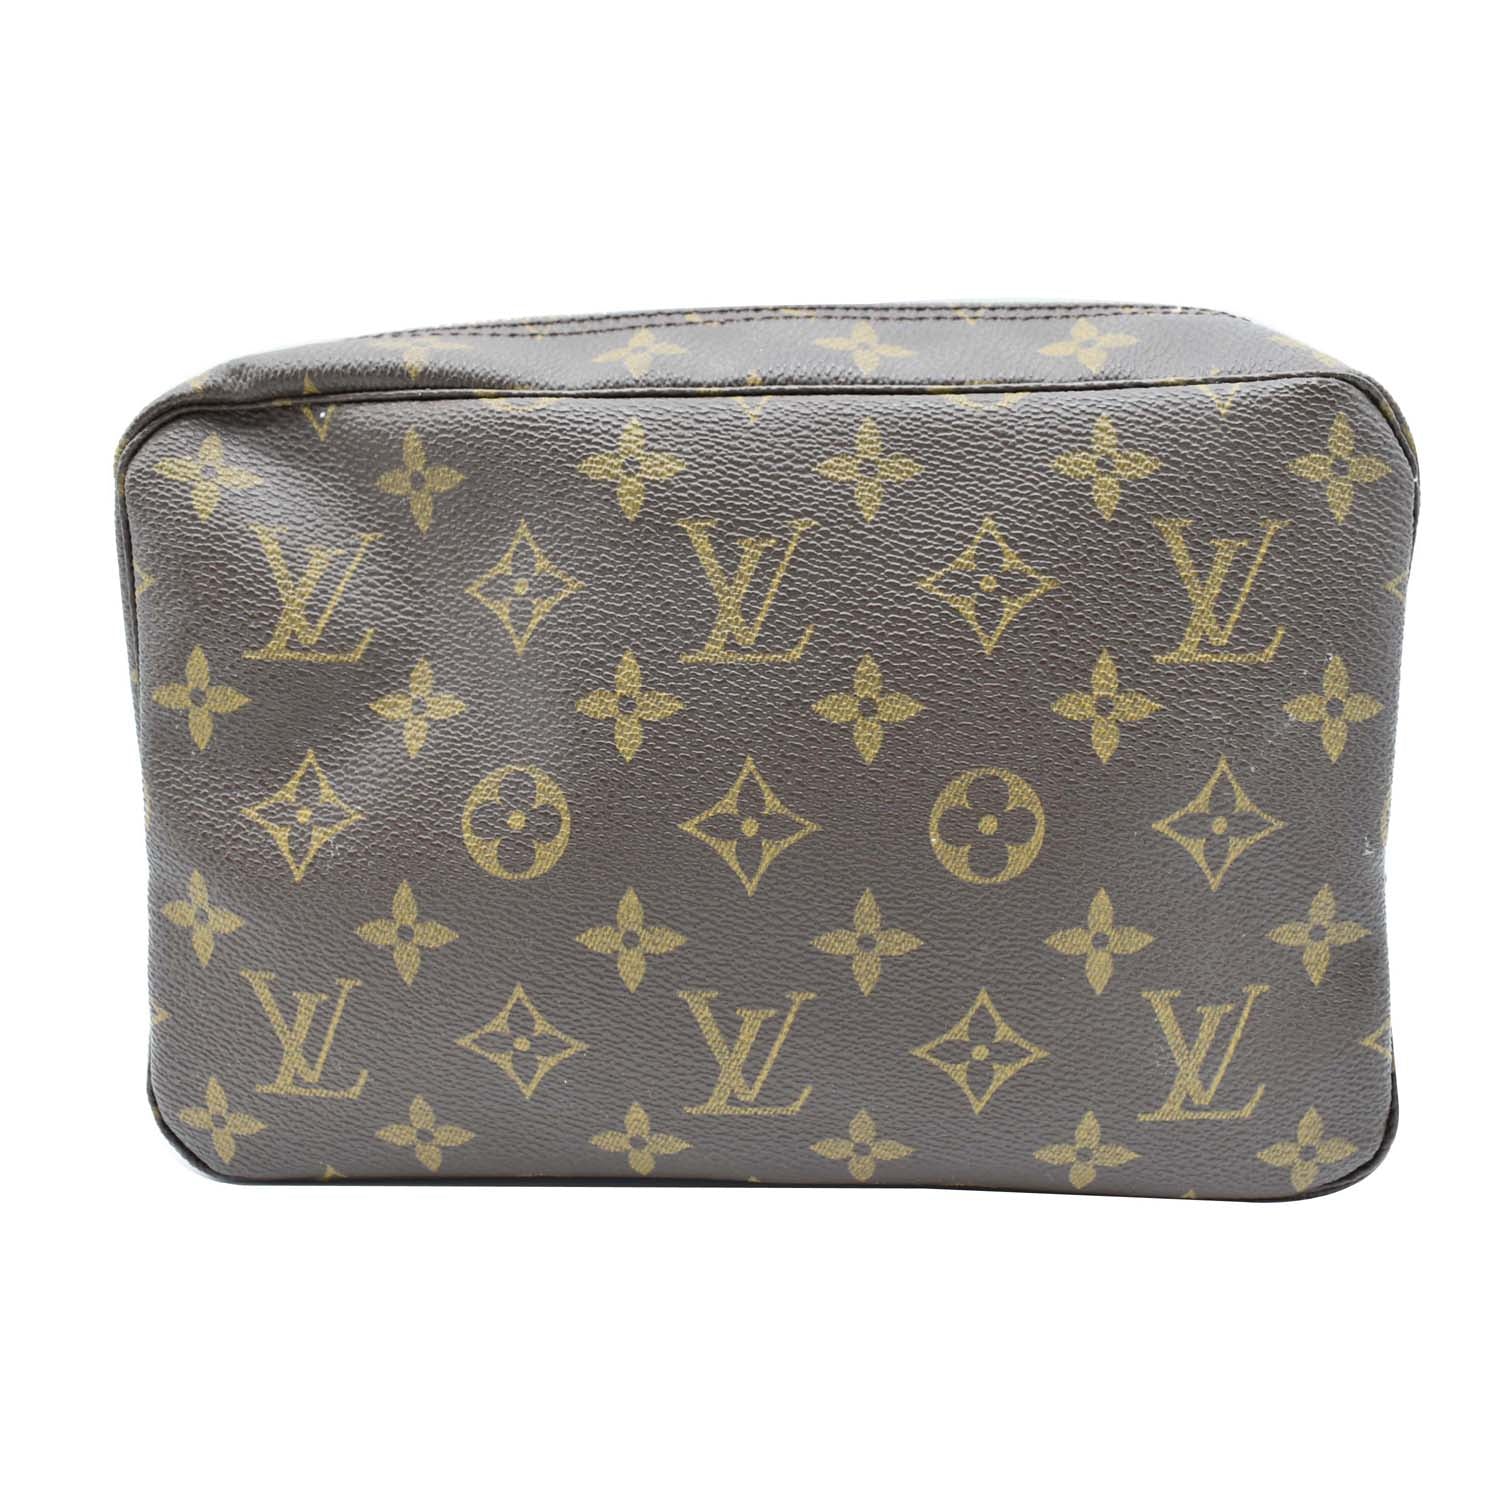 Trousse de toilette leather vanity case Louis Vuitton Brown in Leather -  31312511